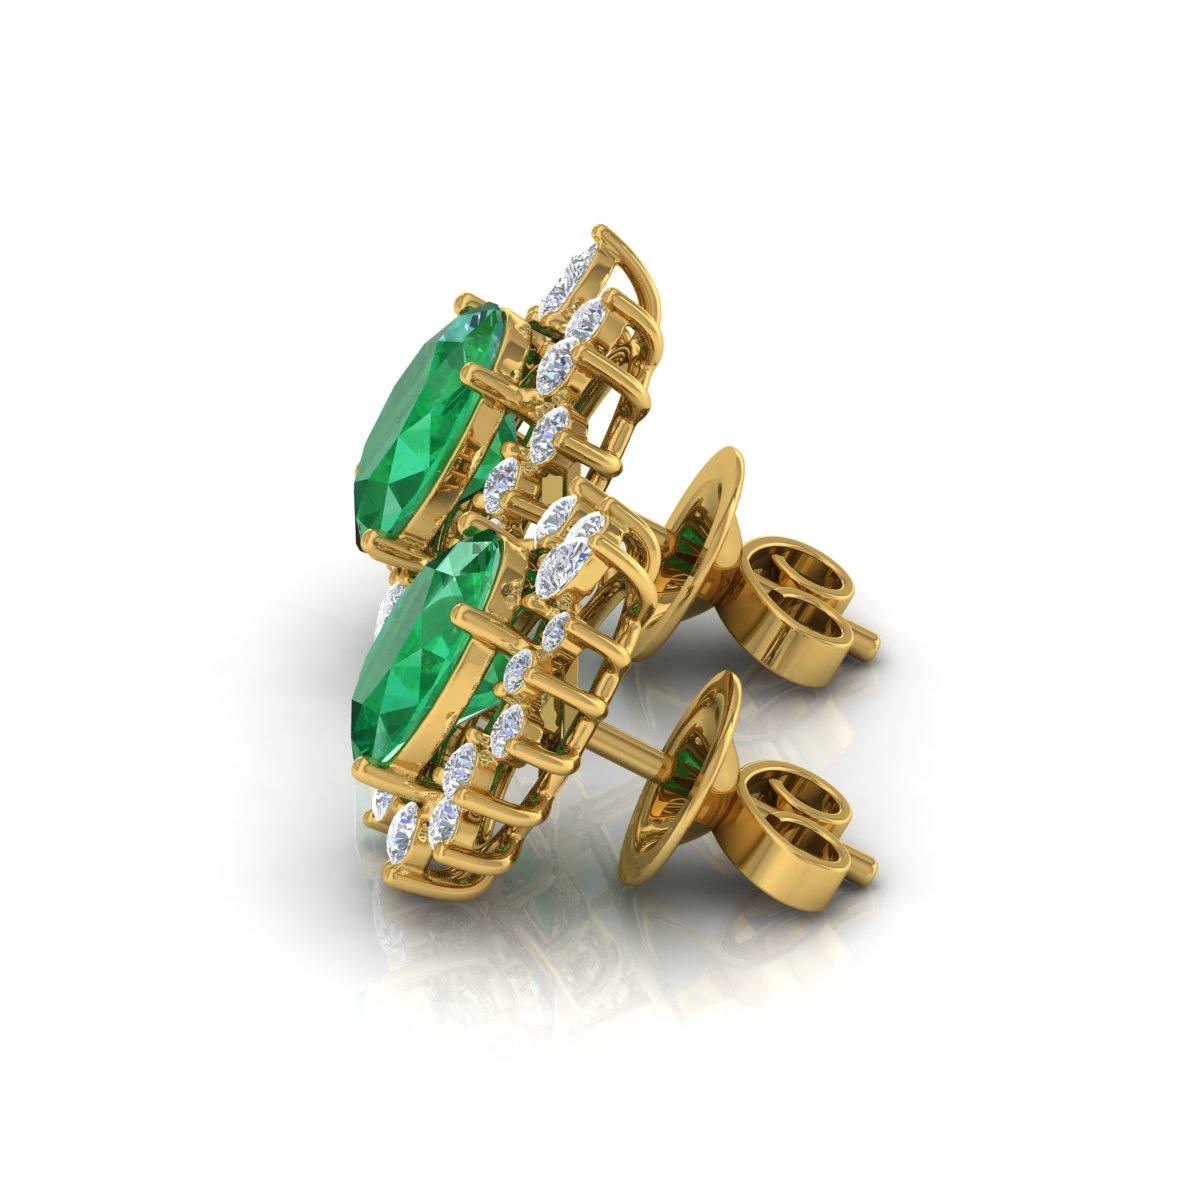 Oval Zambian Emerald Gemstone Earrings Diamond 18 Karat Yellow Gold Fine Jewelry For Sale 1